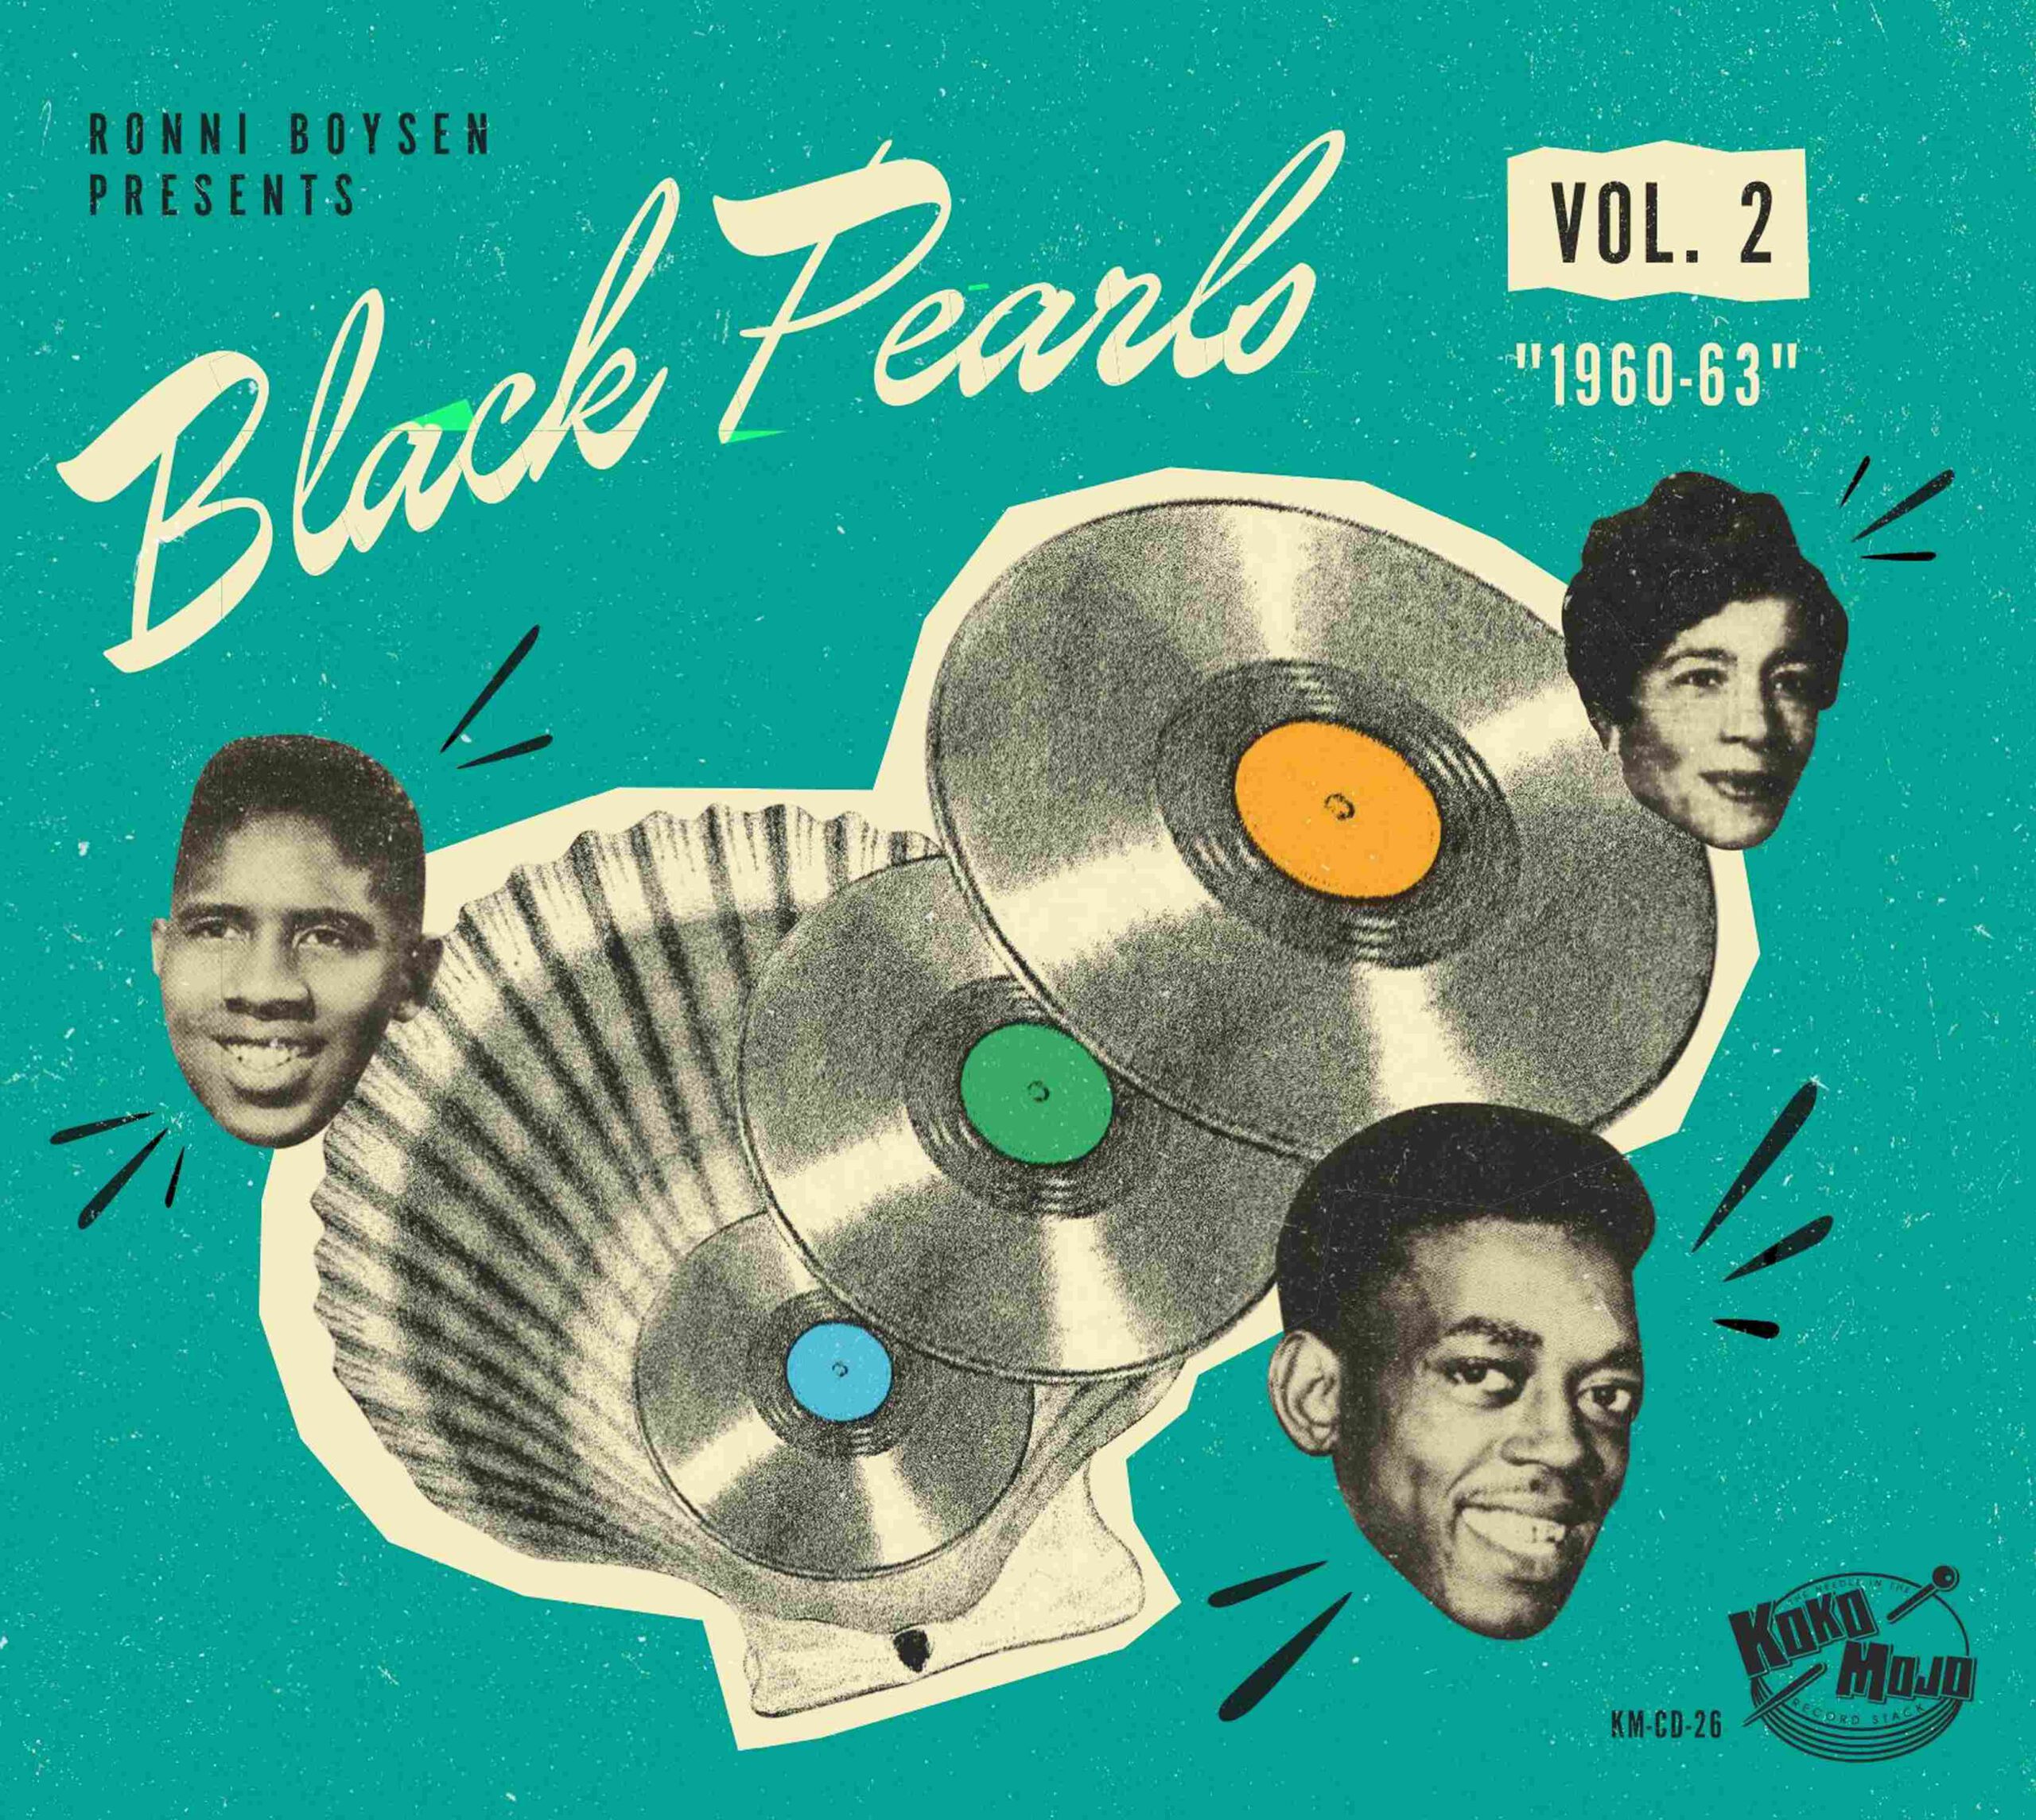 Various Artists - Black Pearls 2 Vol. 1960-63